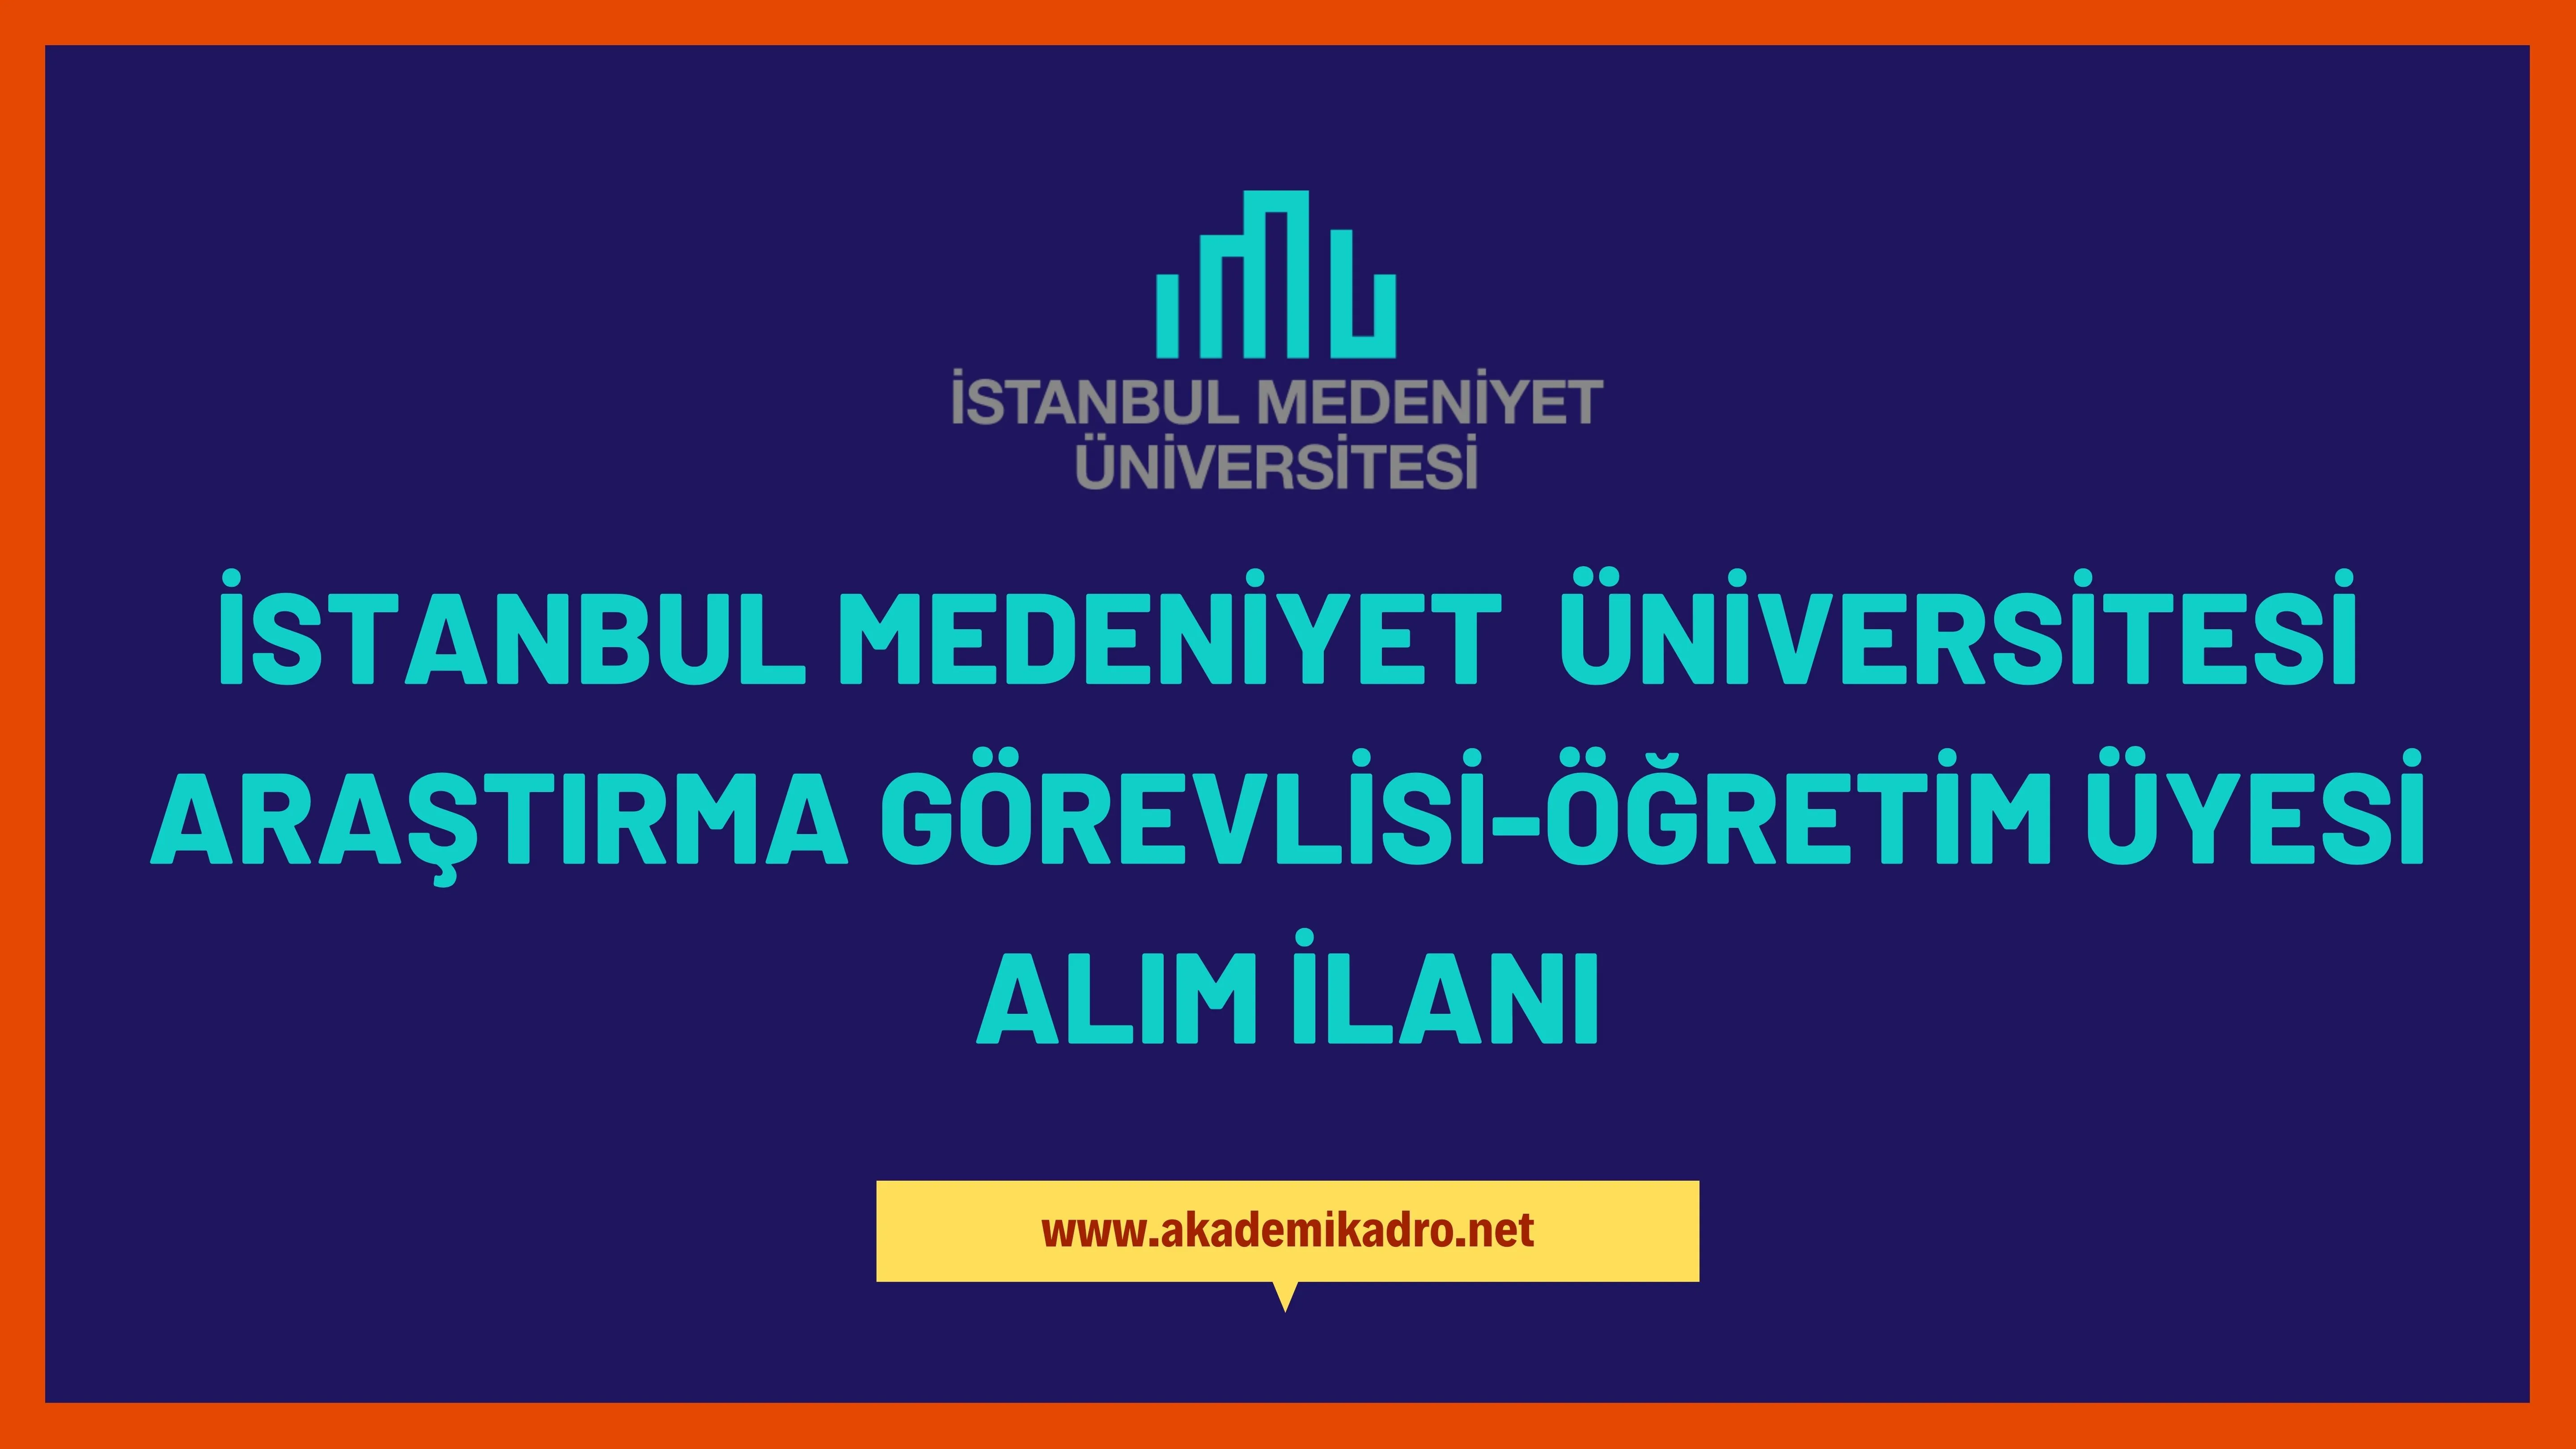 İstanbul Medeniyet Üniversitesi Araştırma görevlisi ve öğretim üyesi olmak üzere 26 Öğretim elemanı alacak.